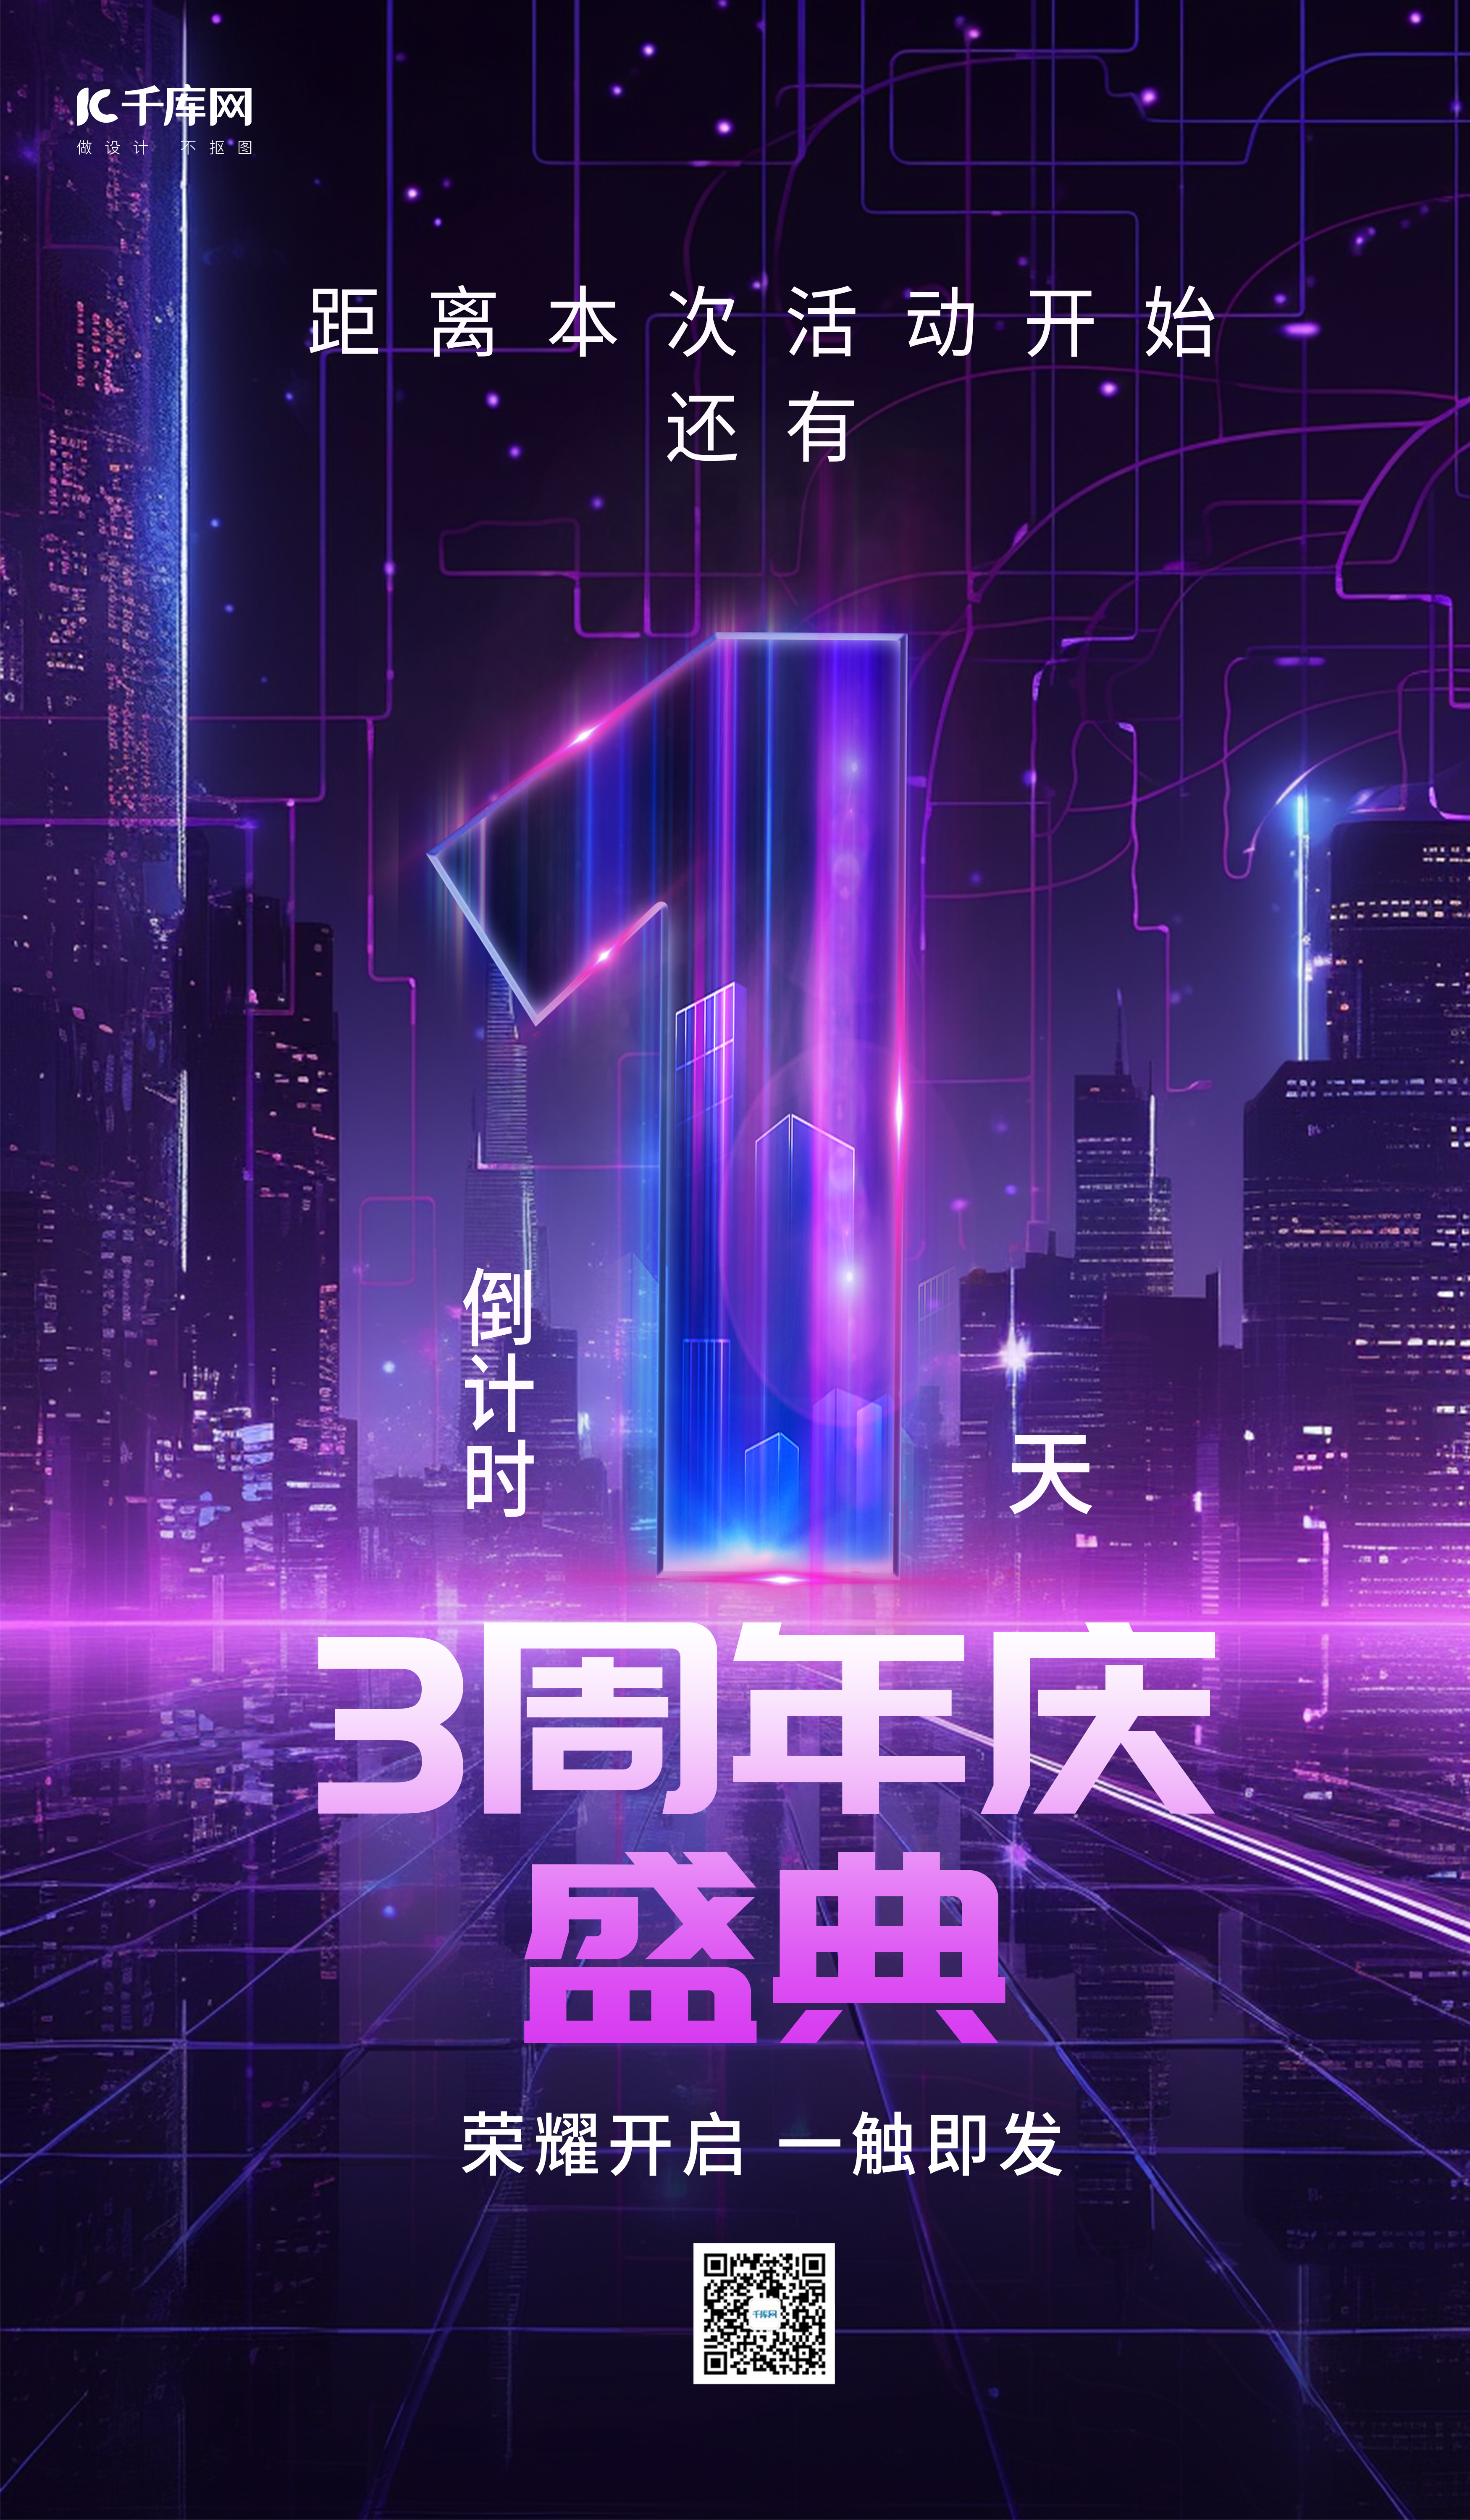 周年庆倒计数字紫色炫酷广告宣传AIGC广告宣传海报图片